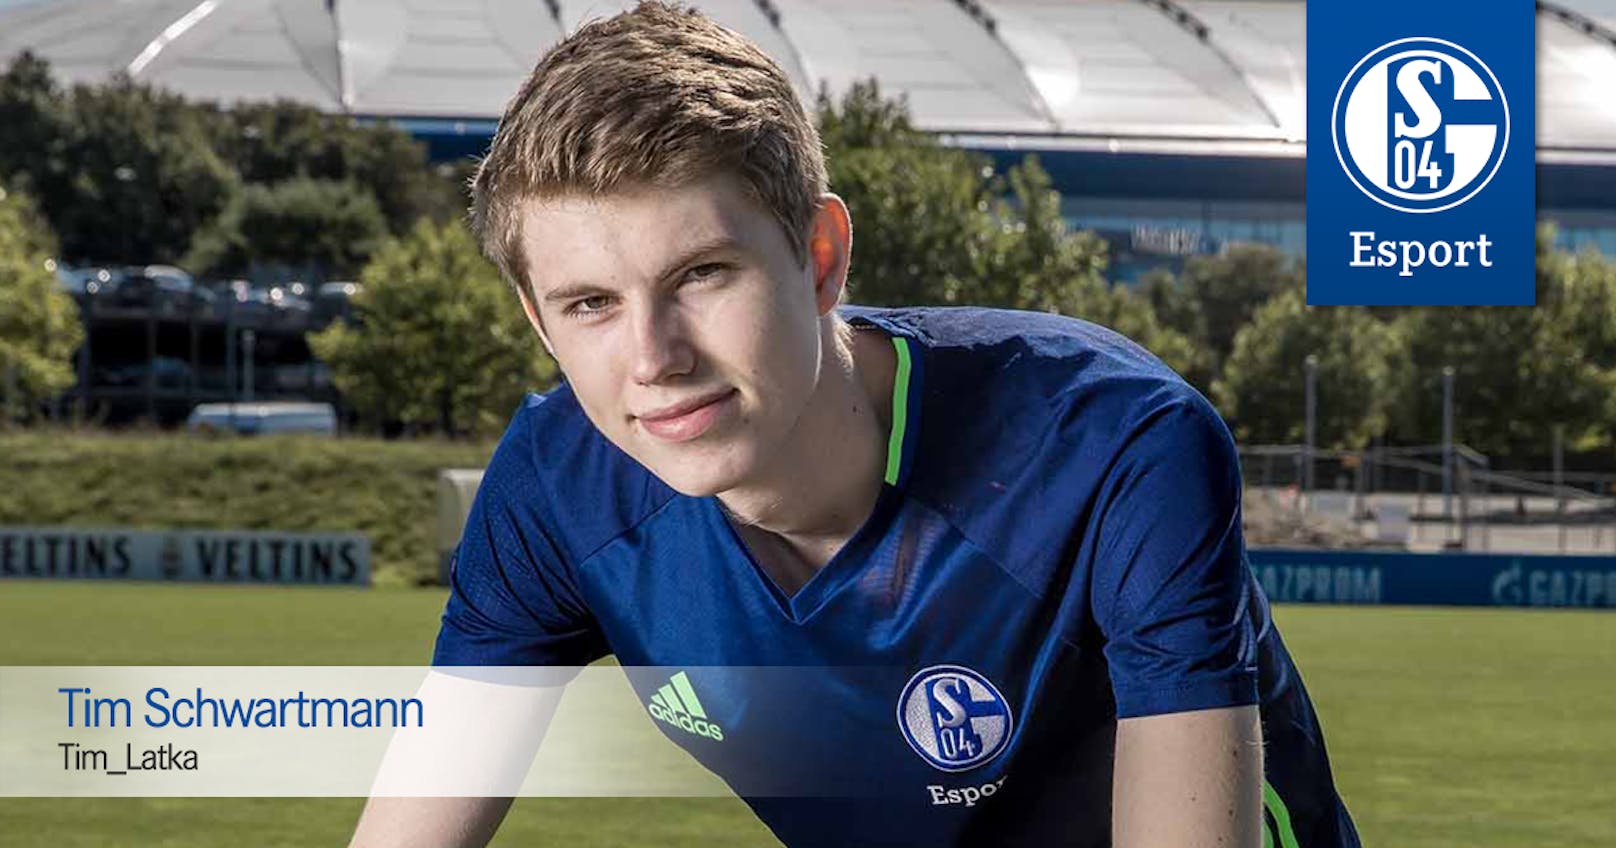 Sein Club FC Schalke 04 Esports unterstützt ihn und spendet das Geld, das sie ihm für das Game gegeben hätten, für einen wohltätigen Zweck.